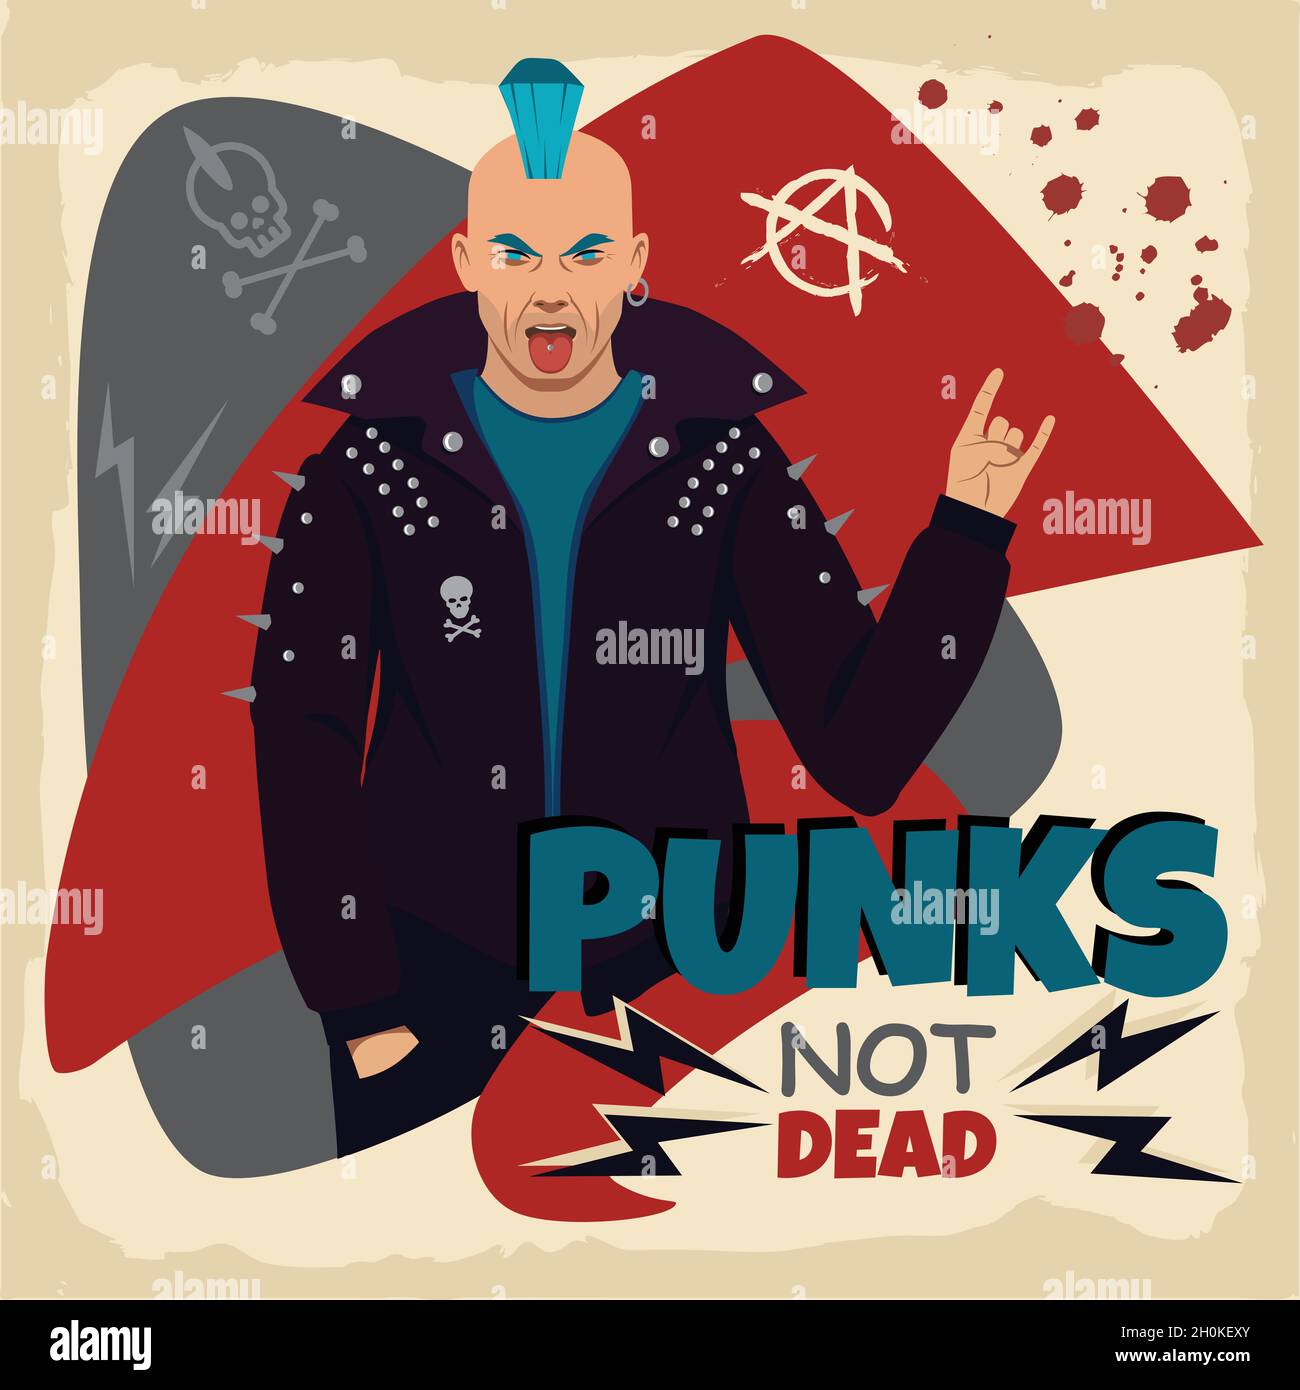 Download Punk Rocker Geezer Royalty-Free Stock Illustration Image